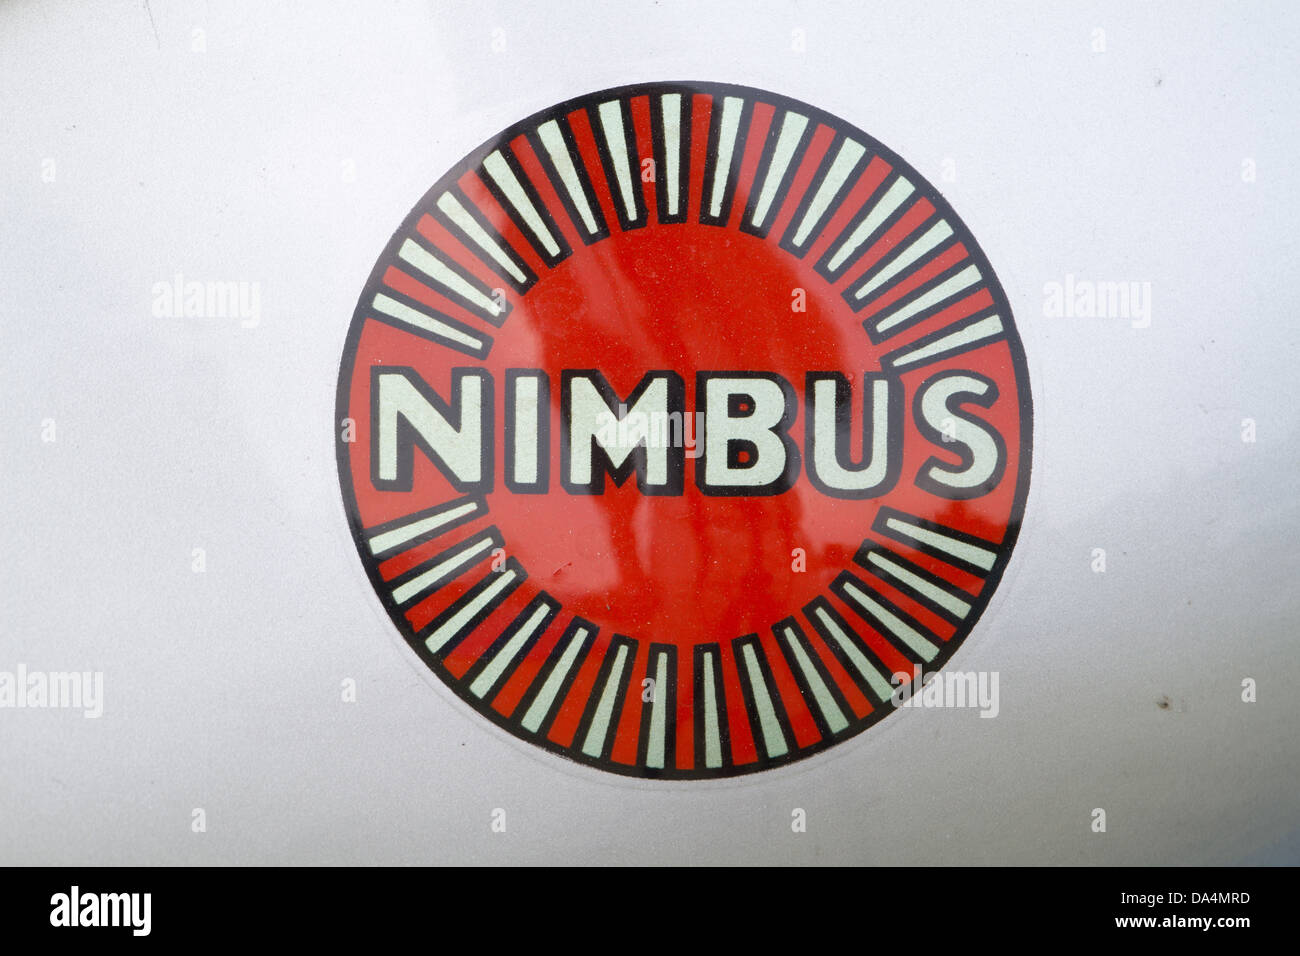 Questo è il logo del Nimbus ciclo motore e lato auto aziendale. Foto Stock